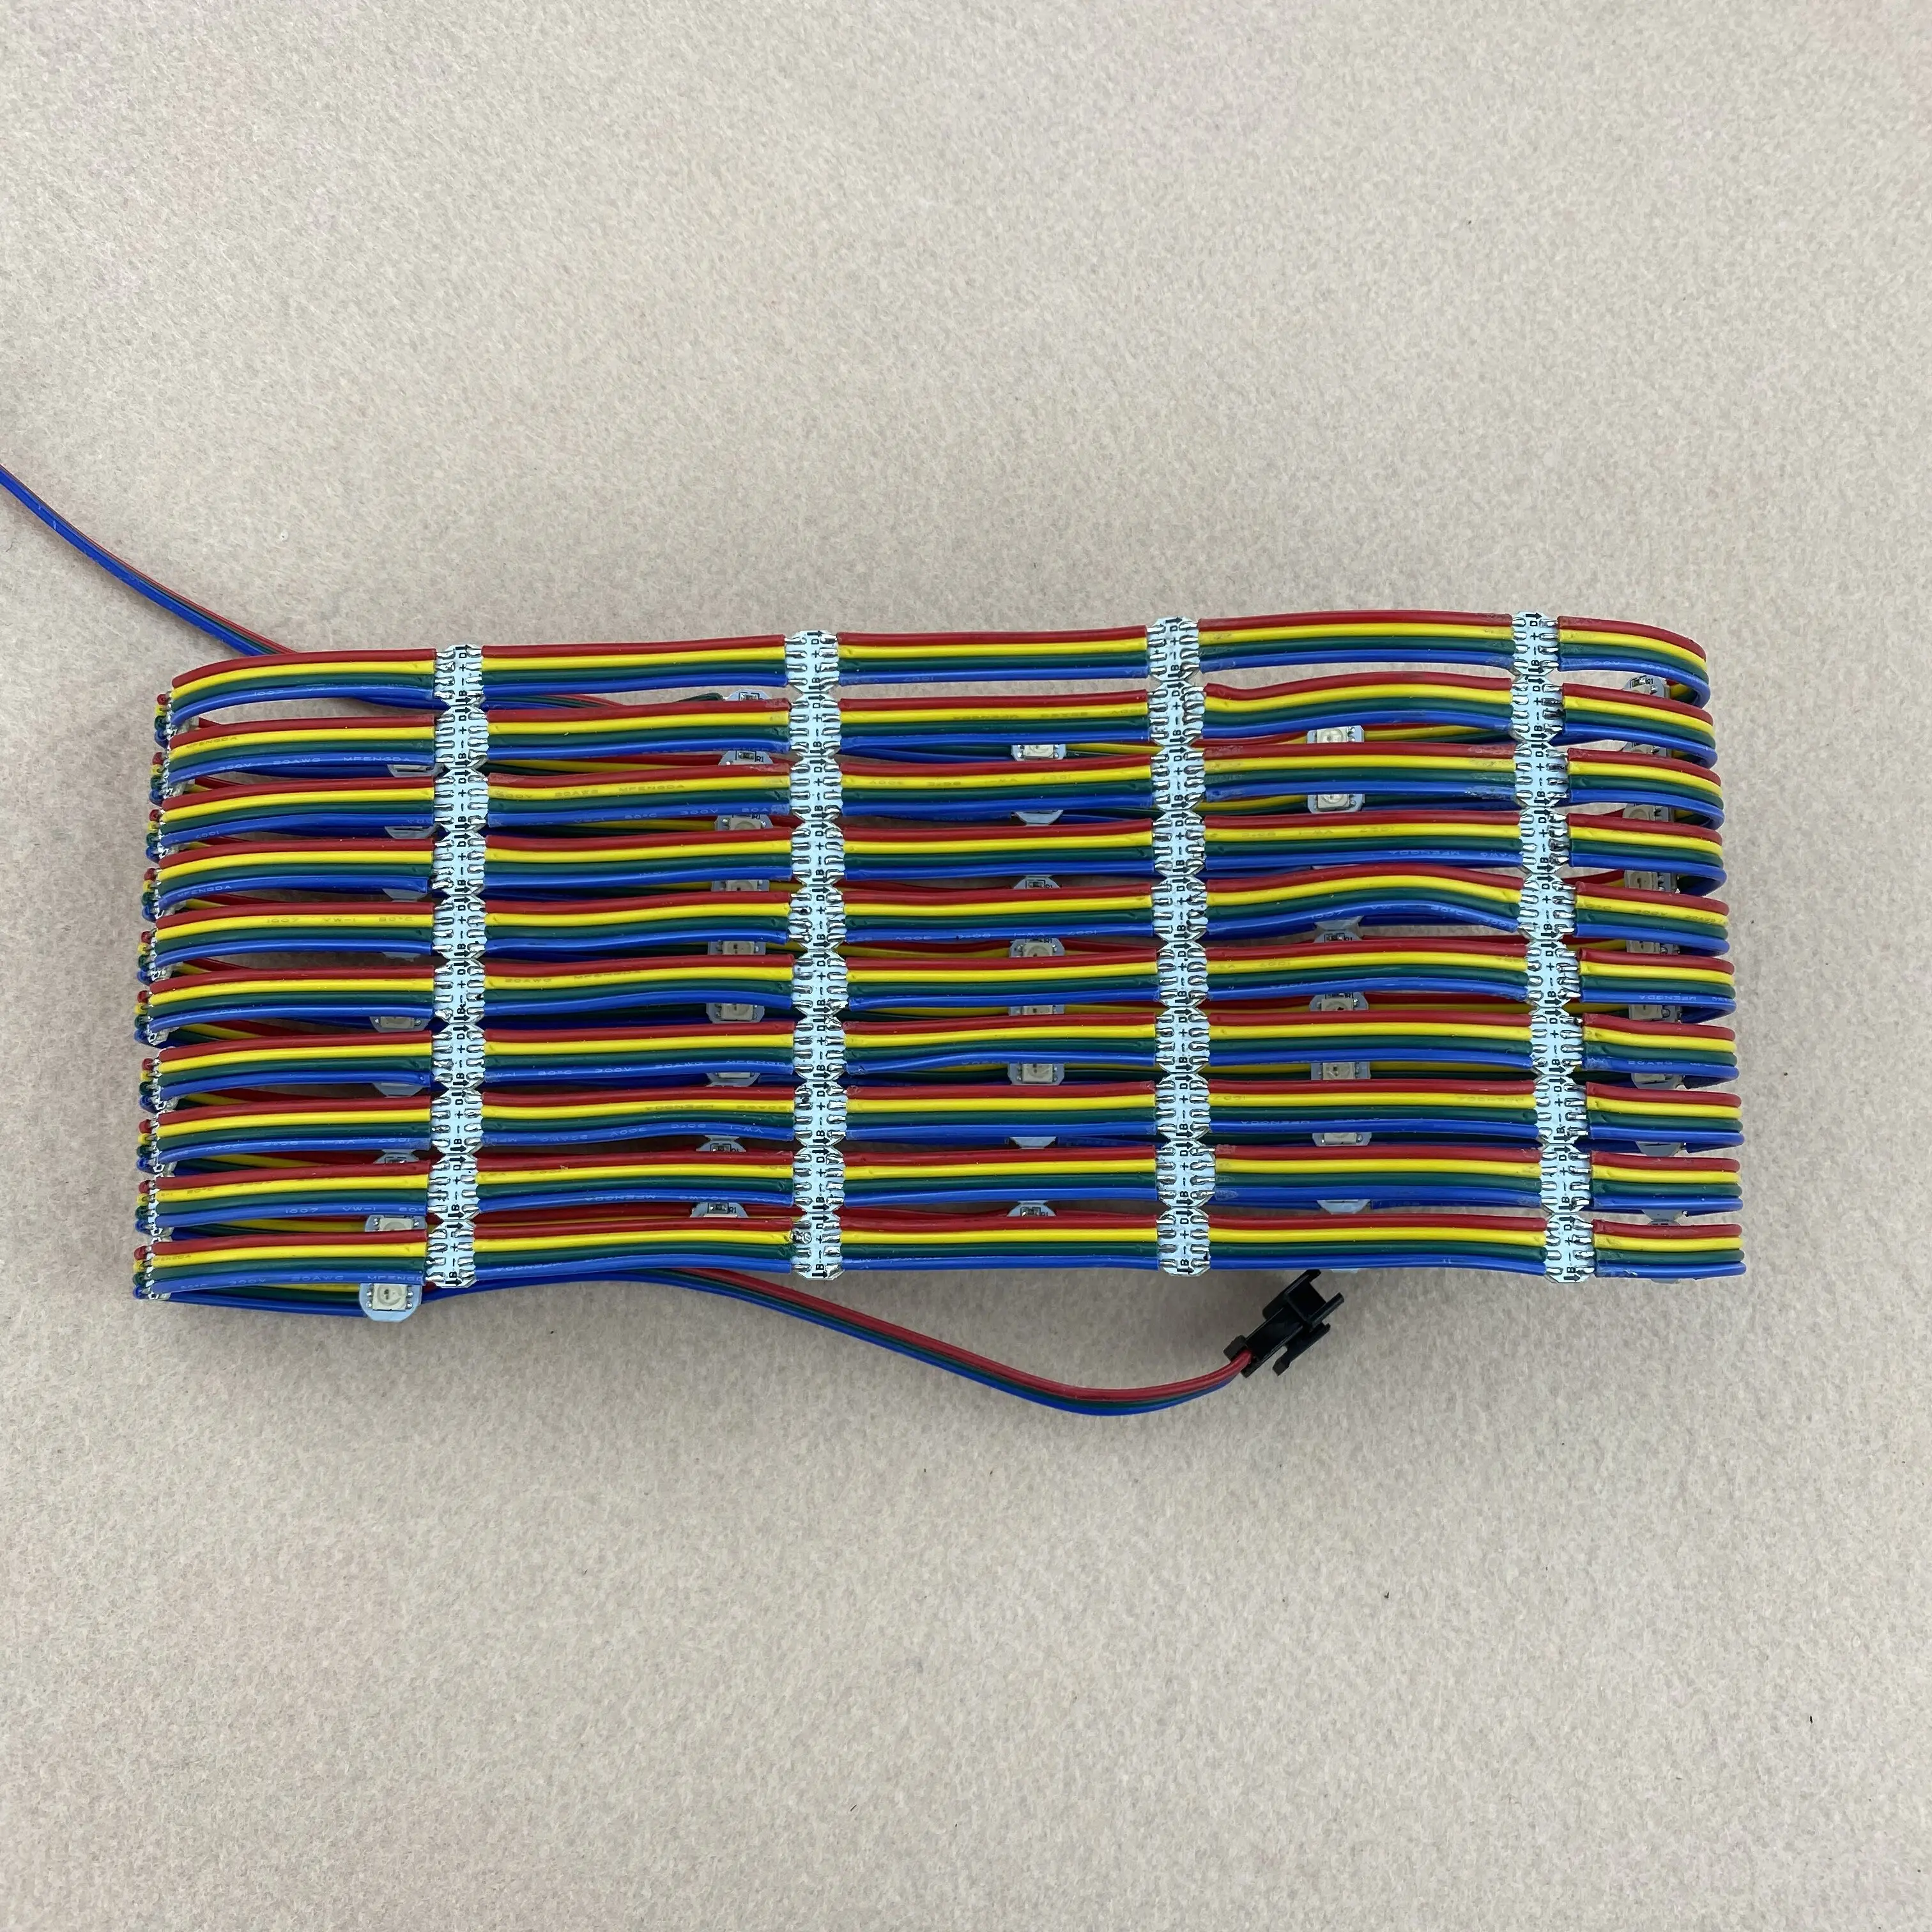 100pcs/string WS2813-RGB fuld farve adresserbare LED pixel lys;dc 5 v indgang;5cm/10cm/15cm wire afstand;med farve wire;IP20 5